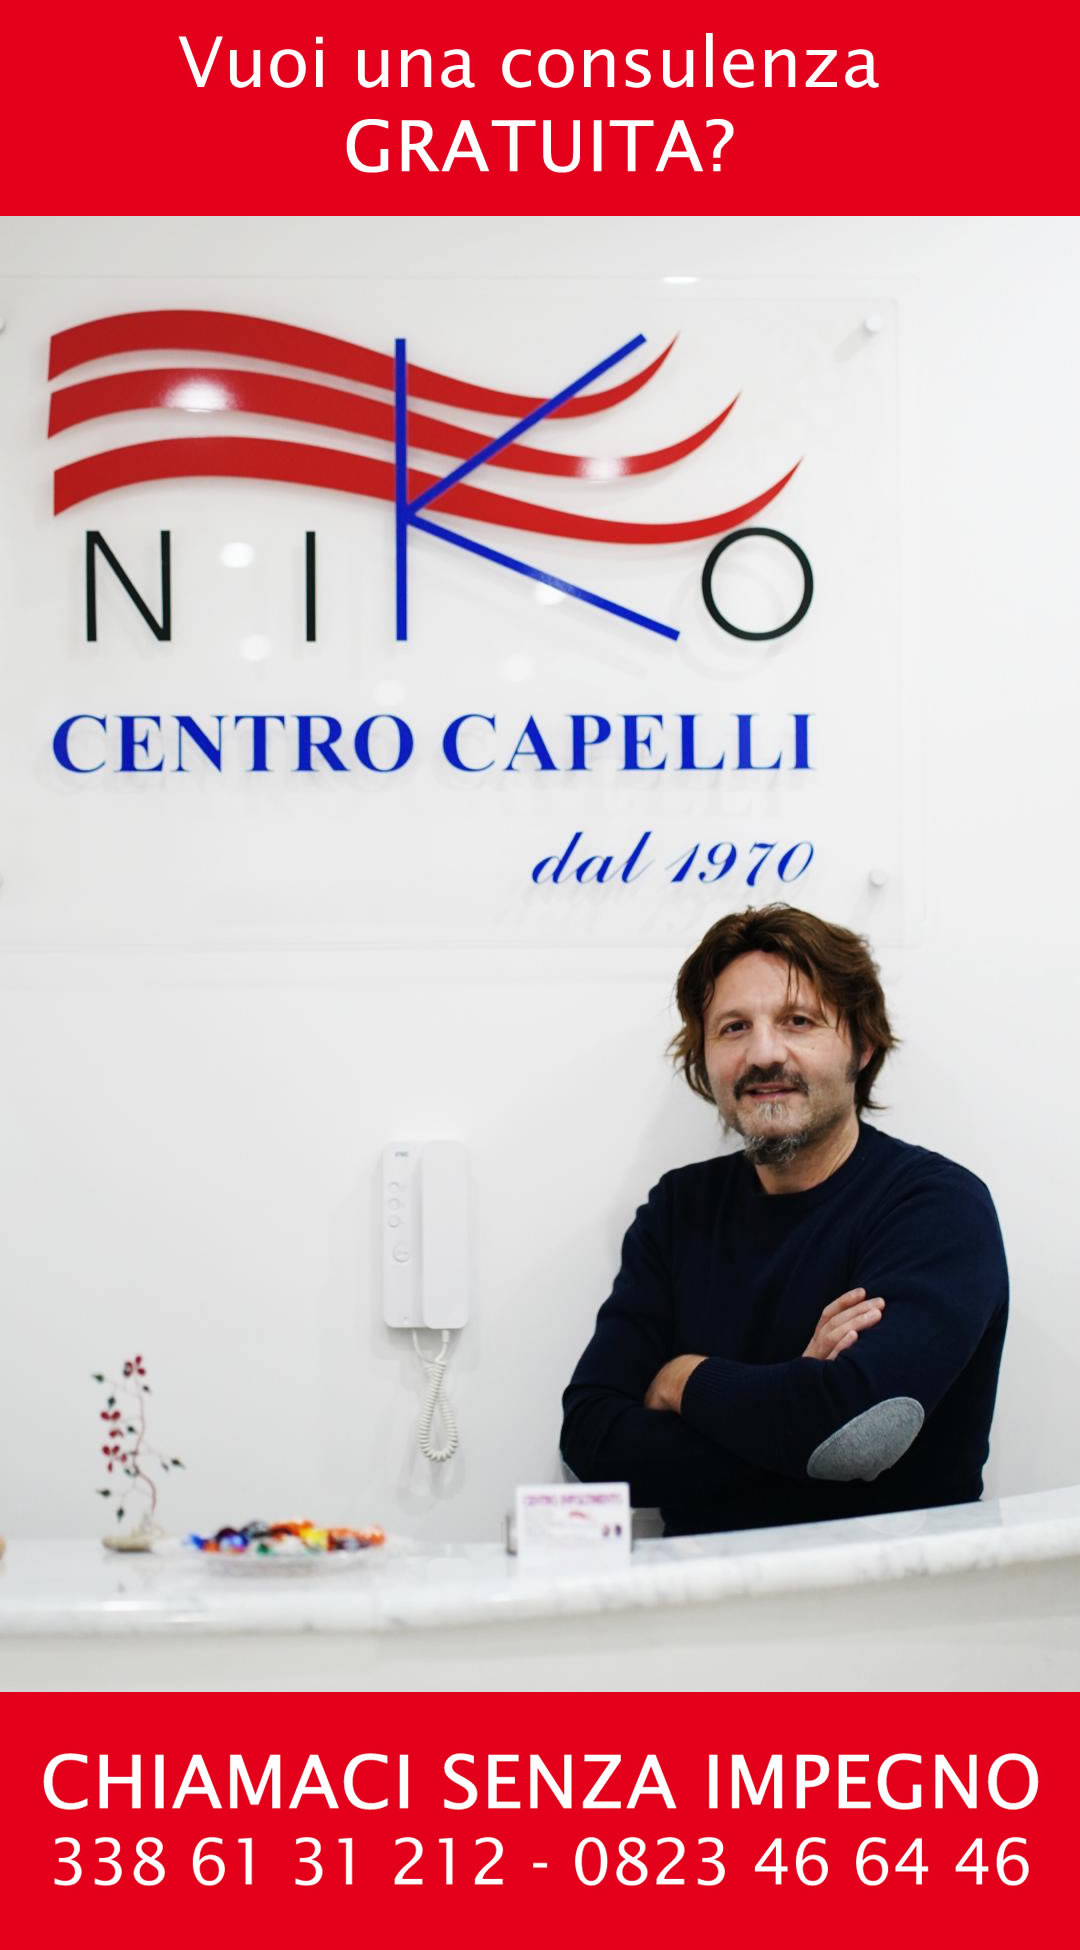 Niko Centro Capelli